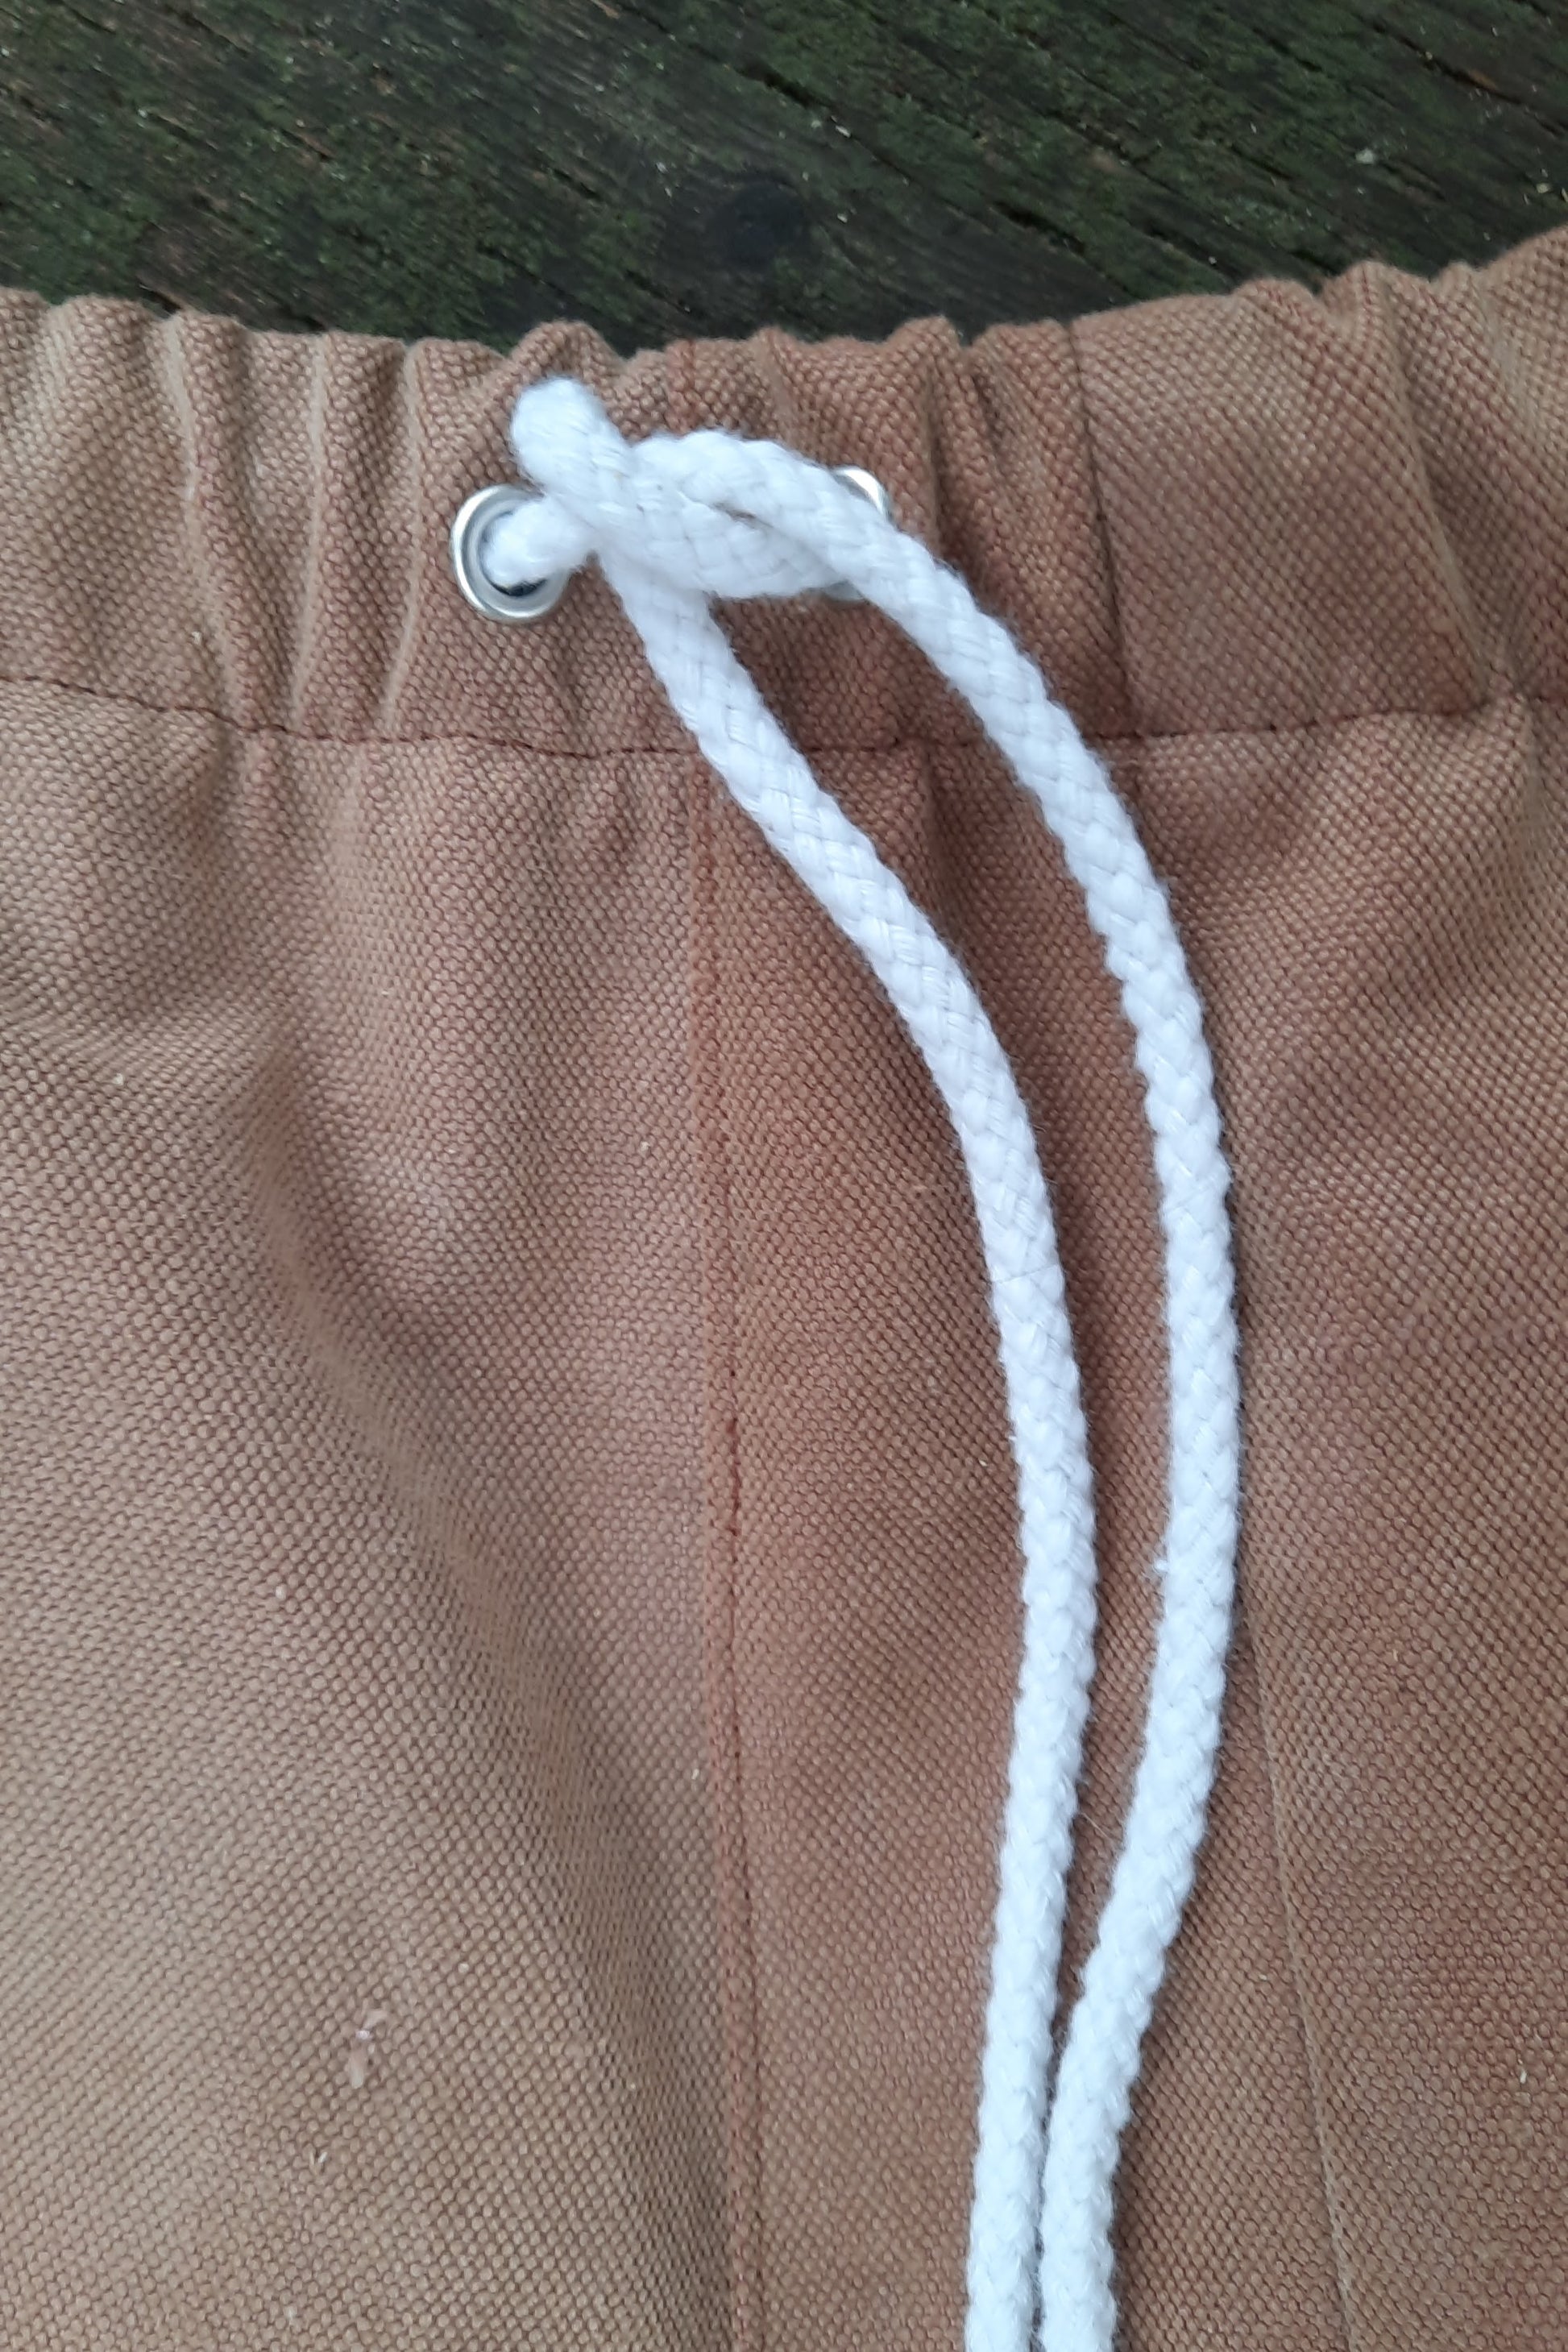 drawstring cord on shorts